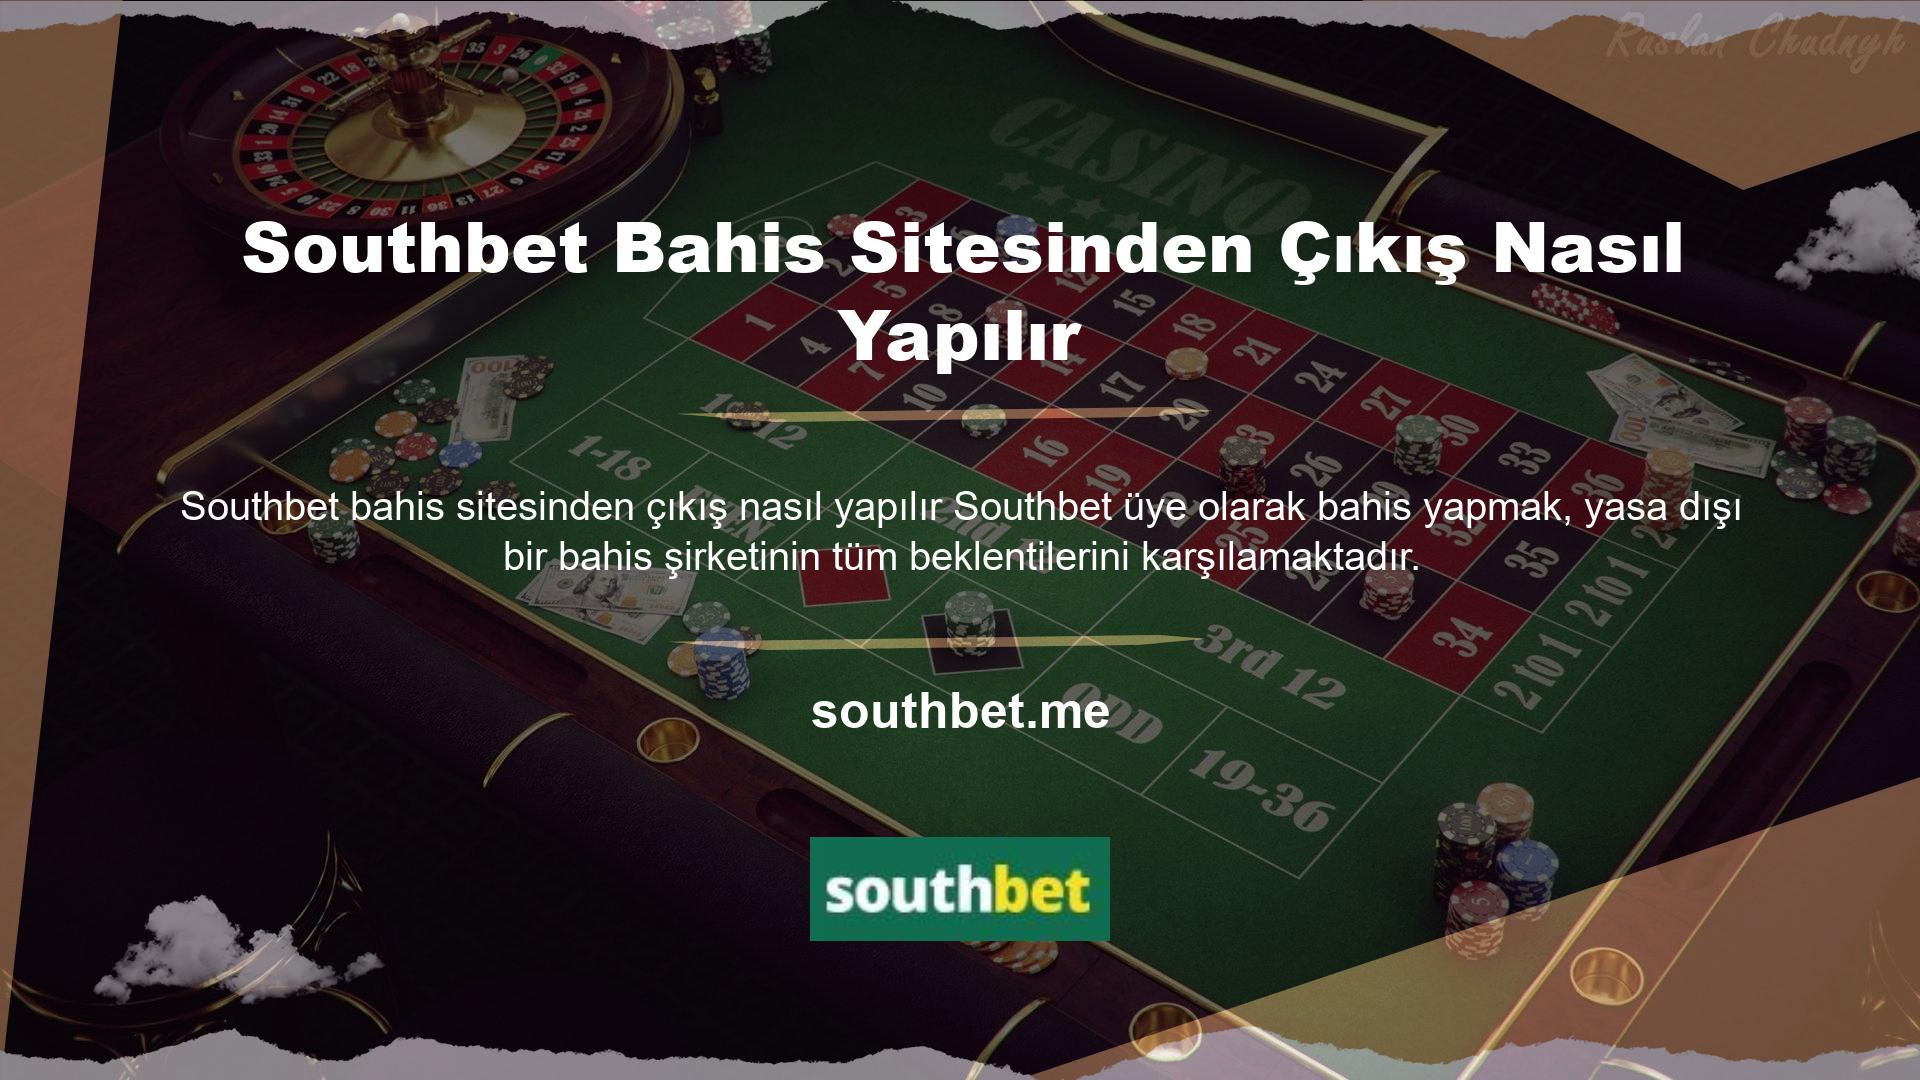 Bahis sitelerinin en meşhuru olan Southbet bahis sitesinden nasıl çıkış yapılır? Gaming, üye tabanını dürüstlükle büyütmek için her gün çalışan bir casino şirketidir